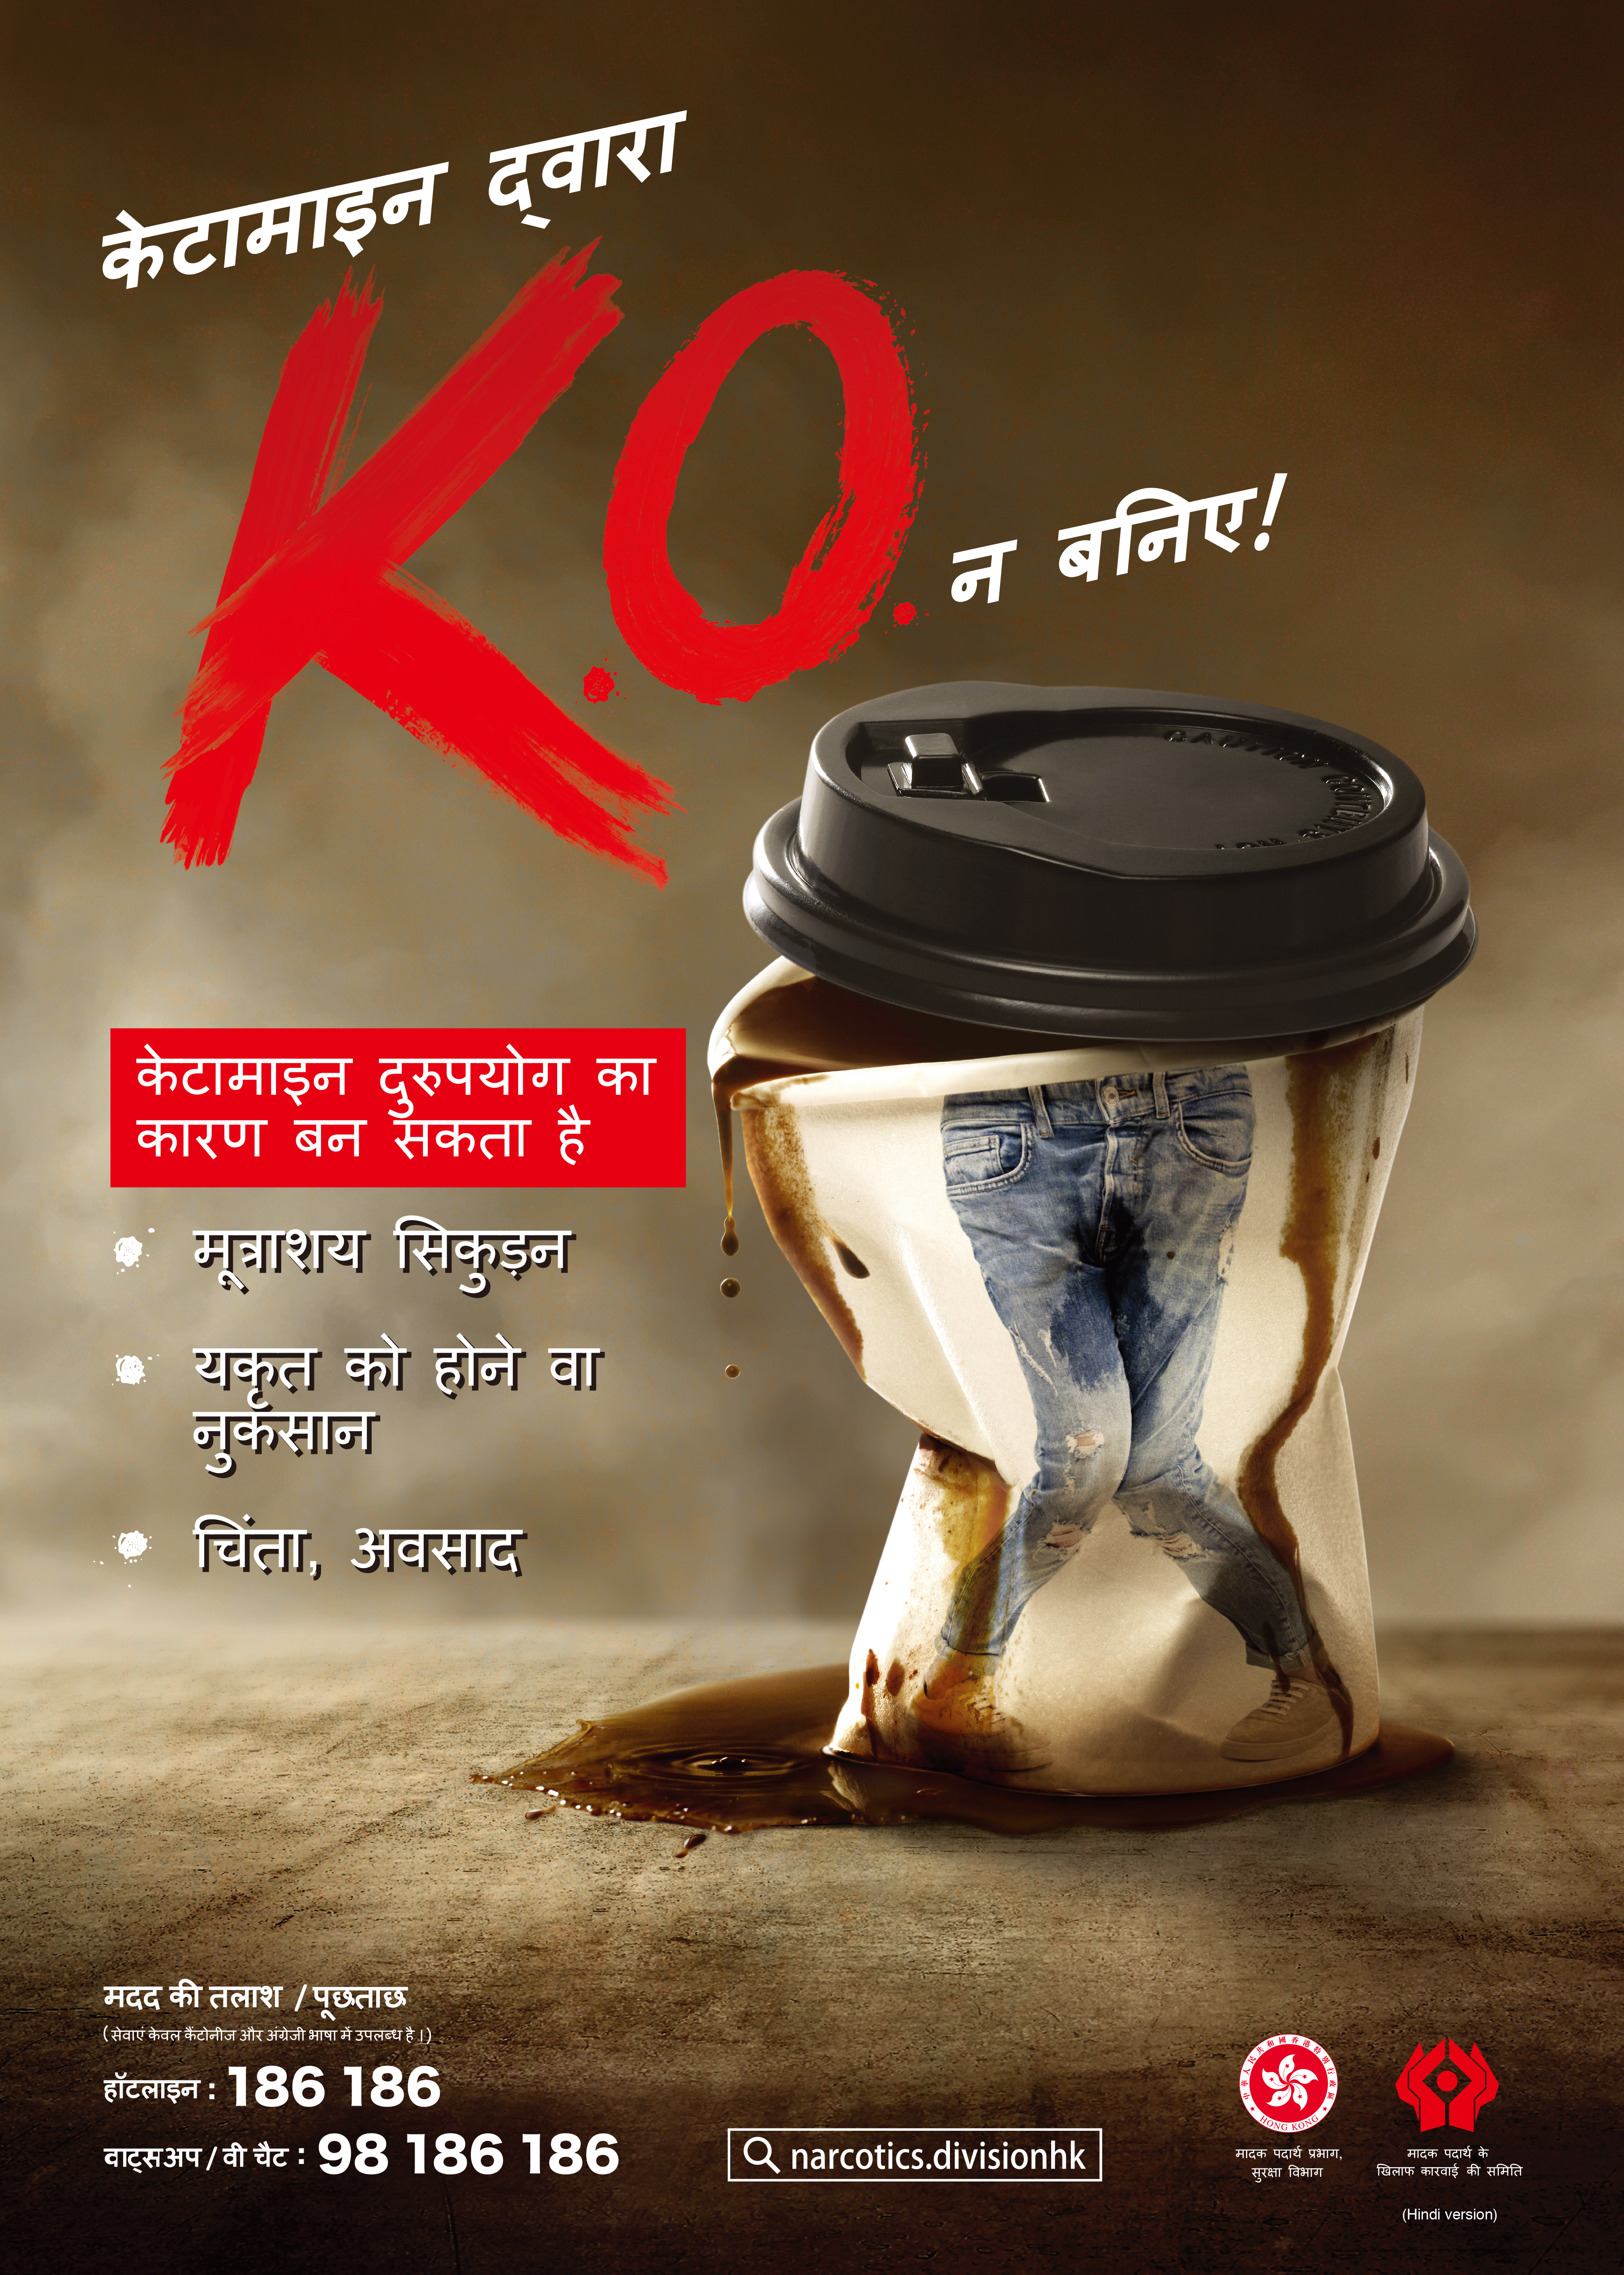 禁毒海報「咪畀K仔K.O.你！」－印度文版本